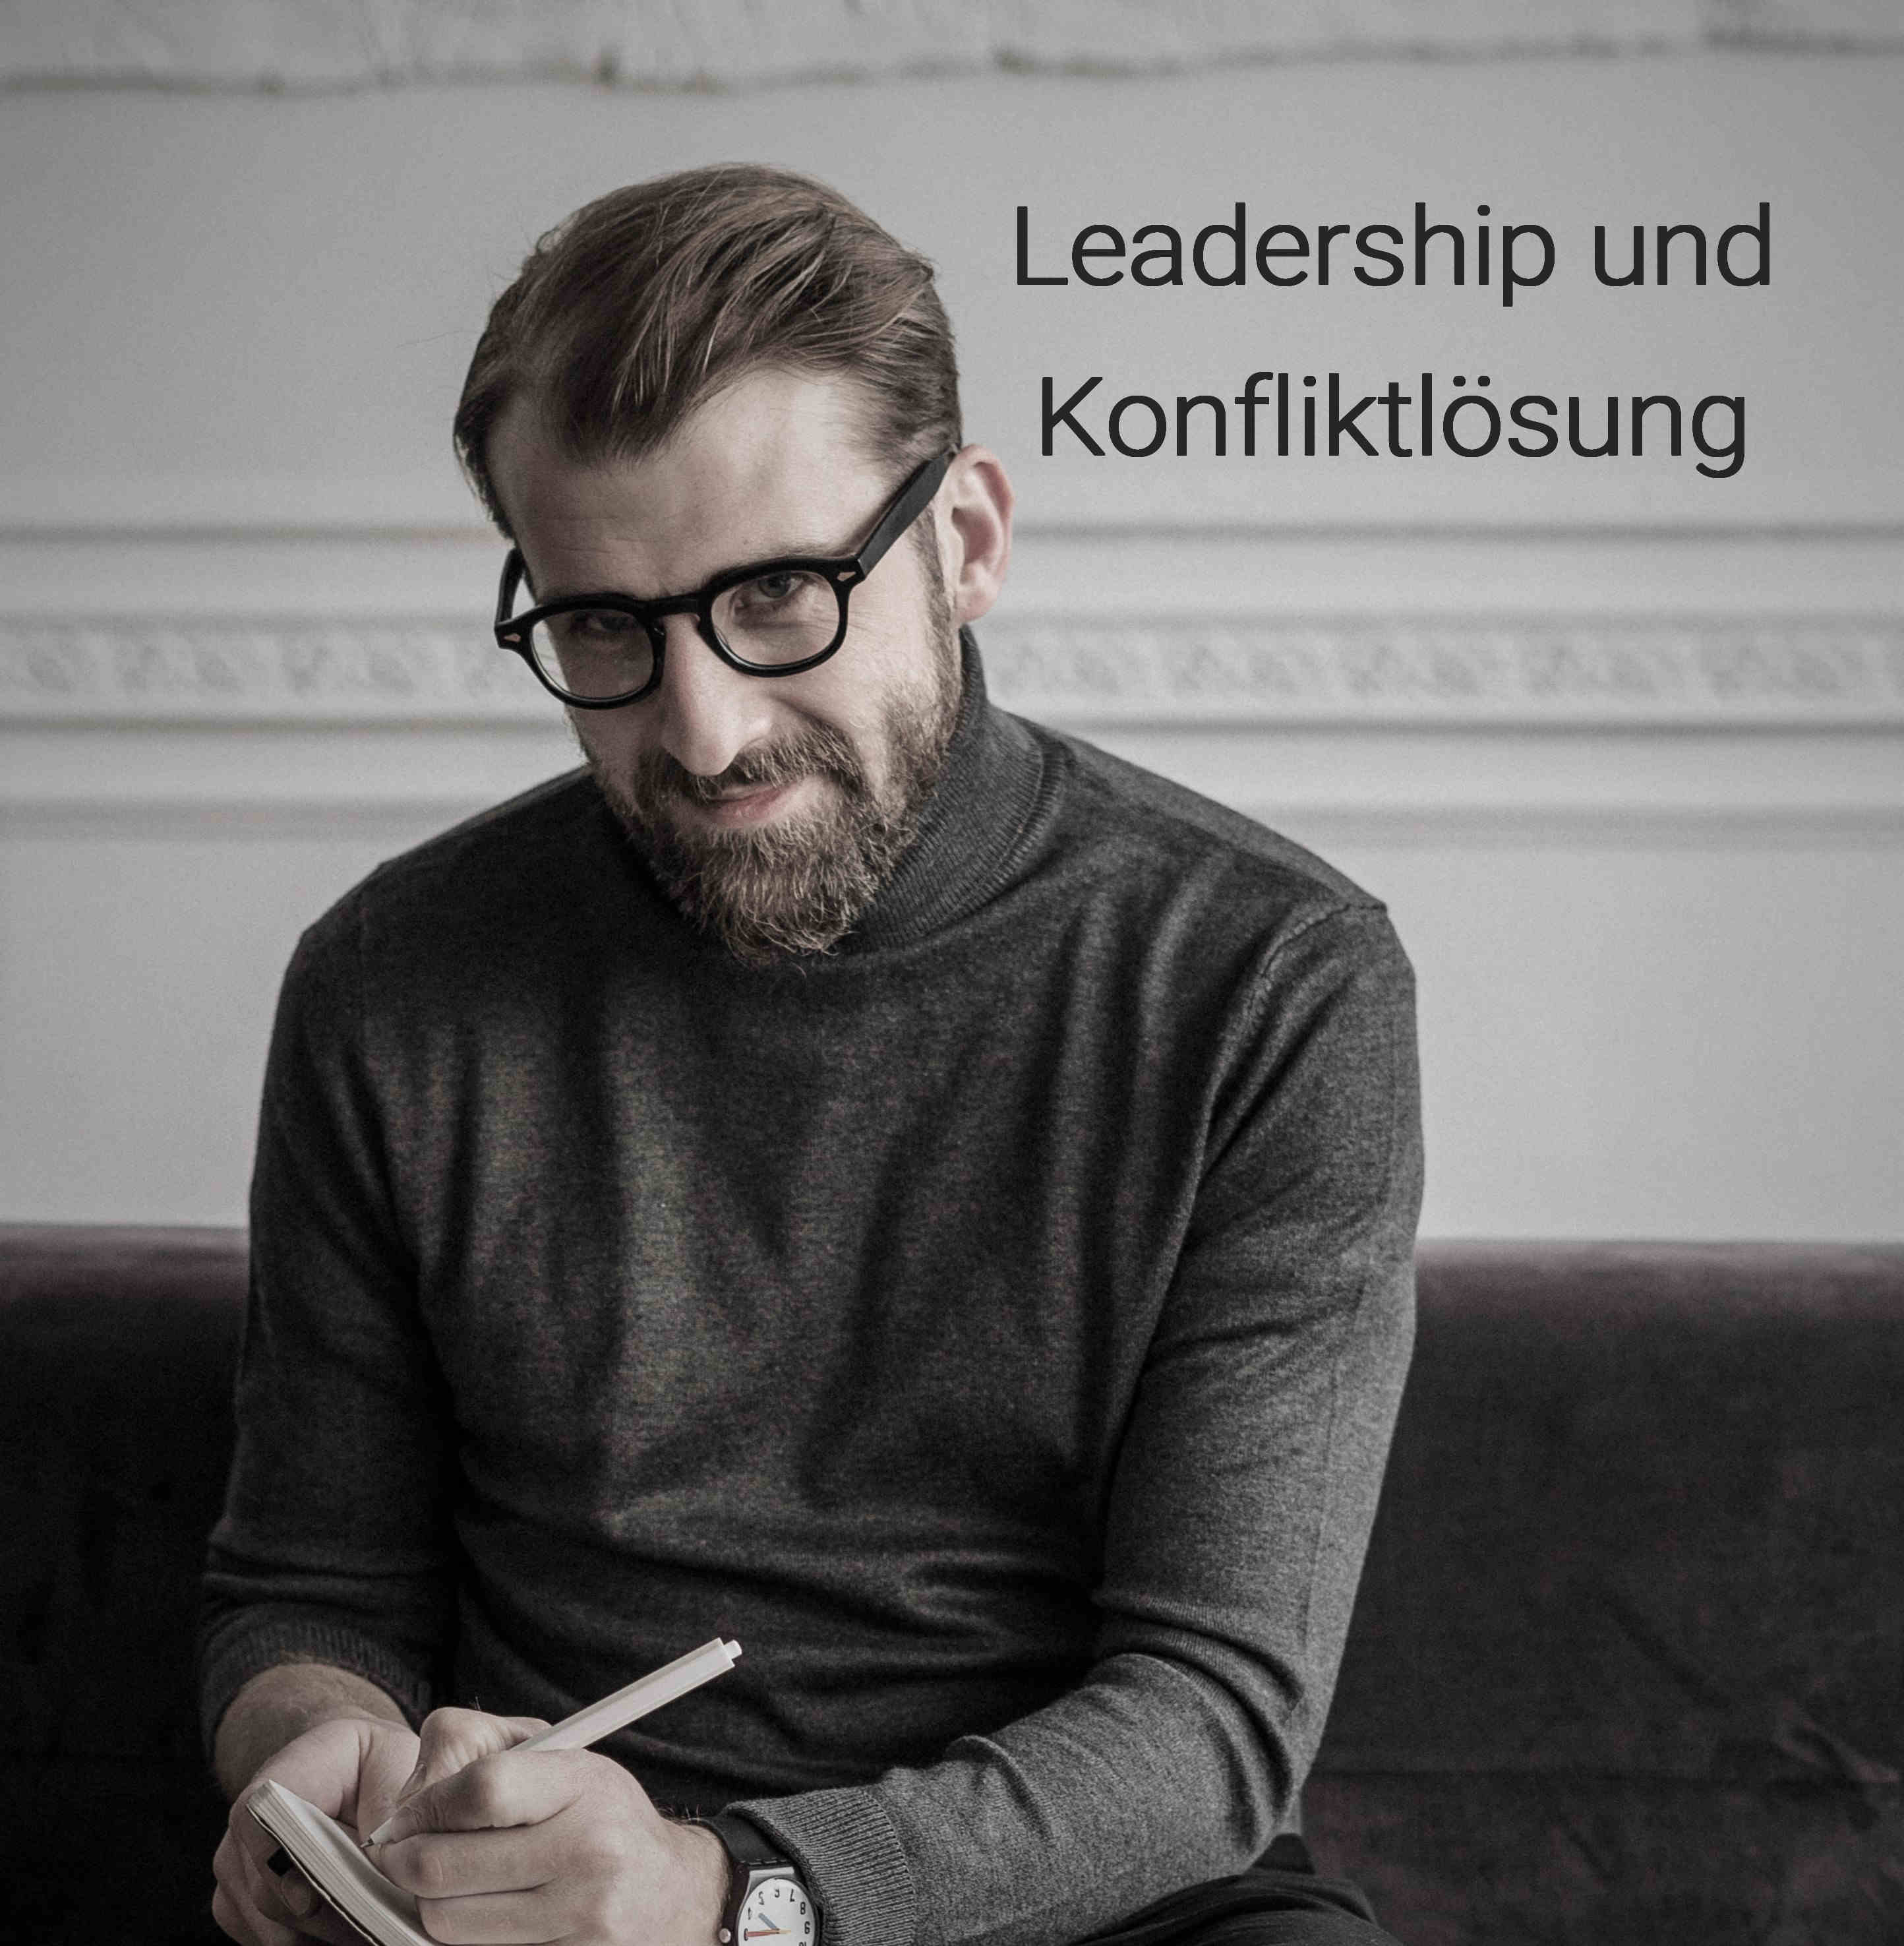 Leadership und Konfliktlösung: Dieser Titel betont die Verbindung zwischen Leadership und Konfliktlösung im Allgemeinen. Er legt den Fokus darauf, dass Leadership eine wichtige Rolle bei der effektiven Bewältigung von Konflikten spielt.